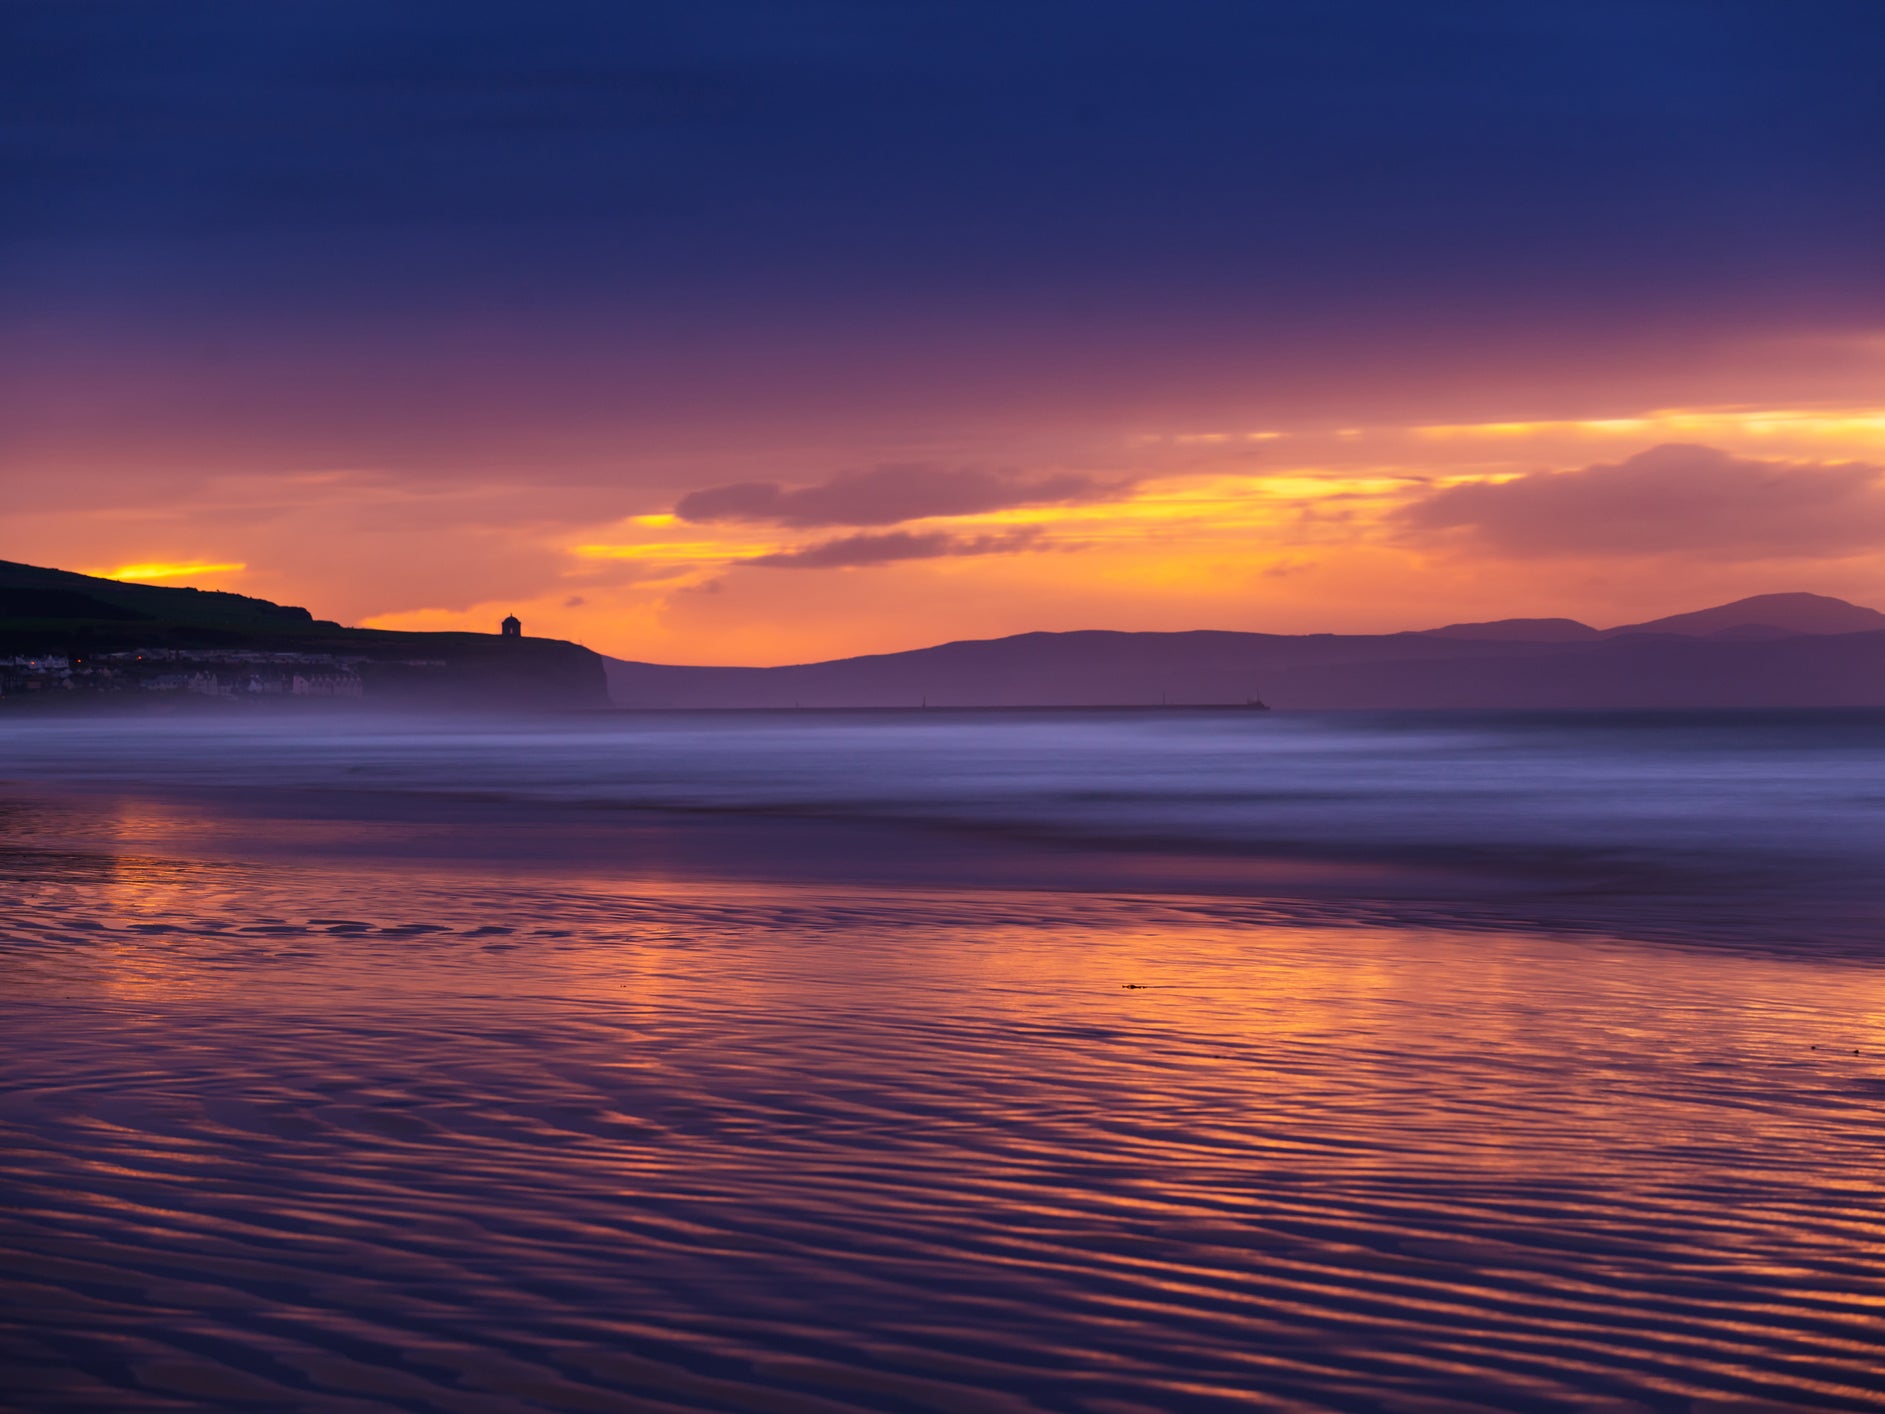 Golden coast: Northern Ireland’s Portstewart Strand at dusk